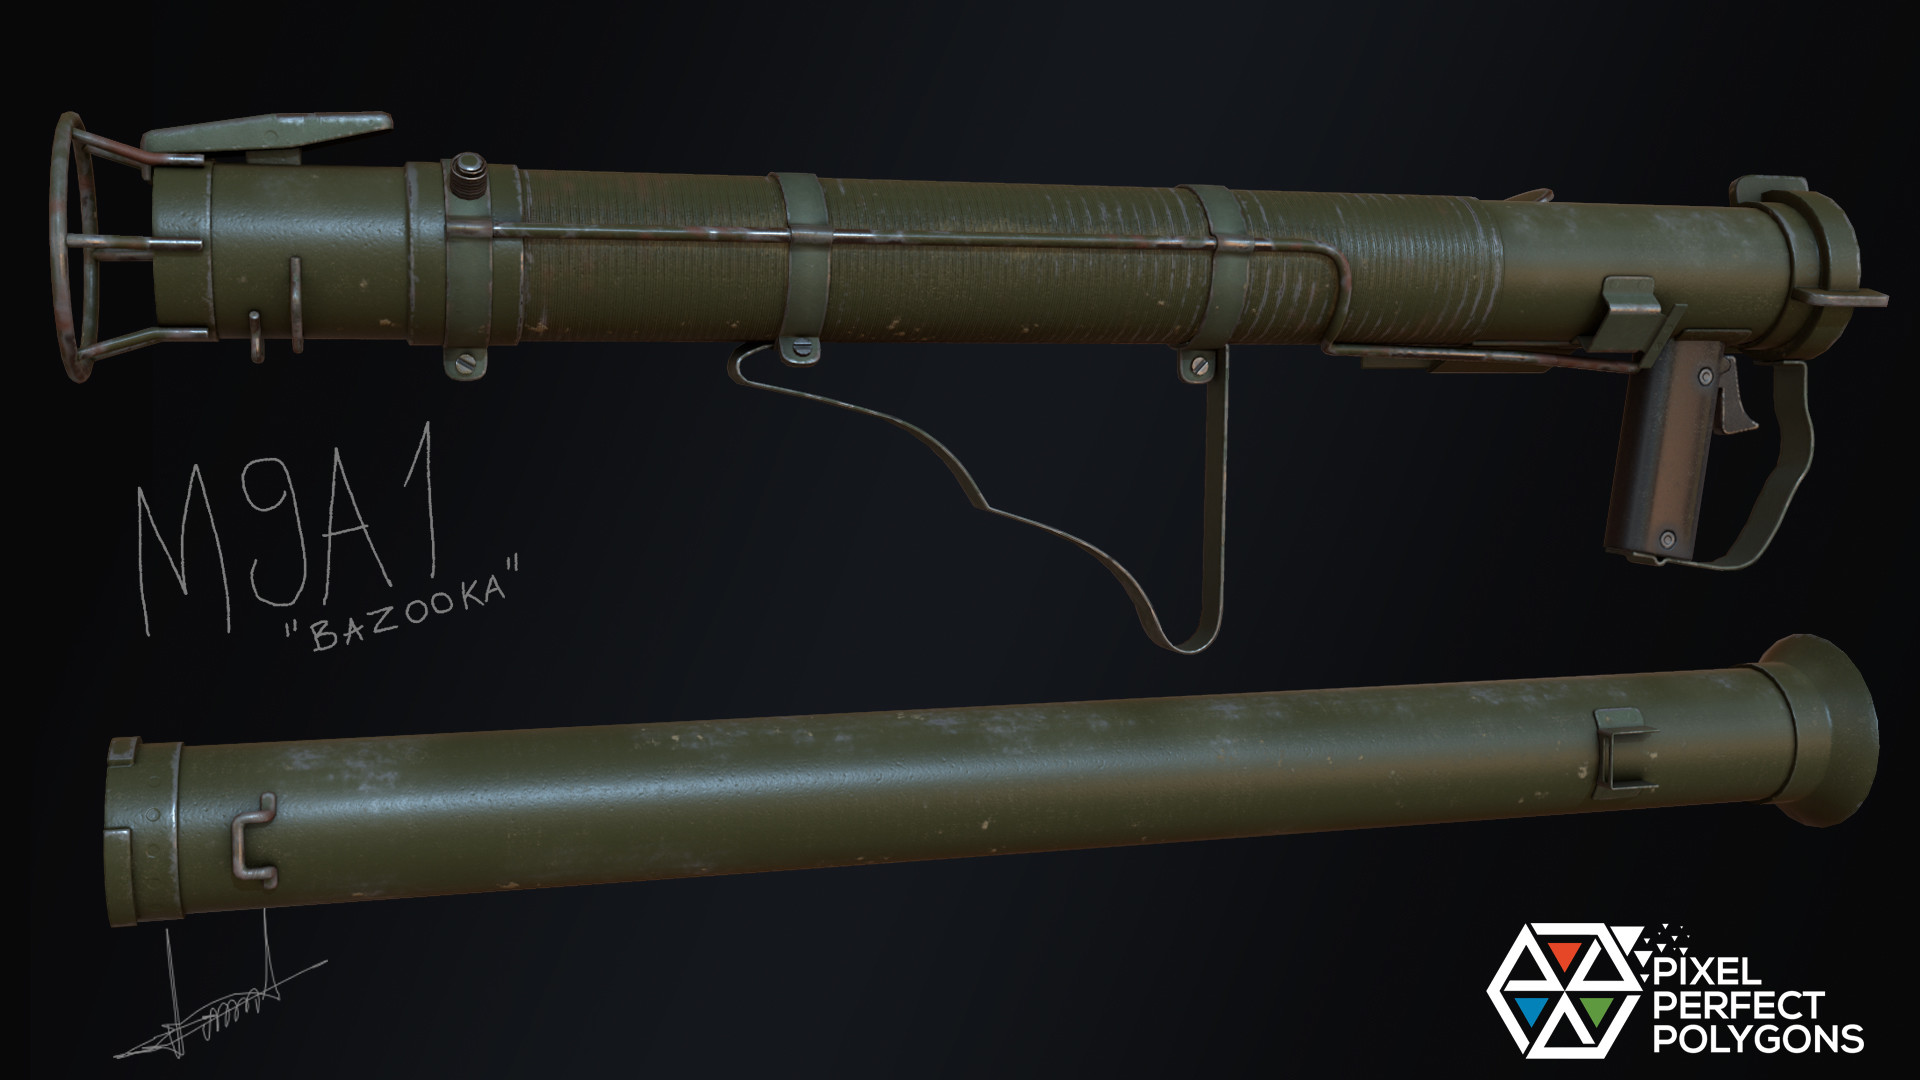 Bella bazooka. M9a1 Bazooka. M9 Bazooka. Базука первый вариант. Bazooka 2000 тяг.